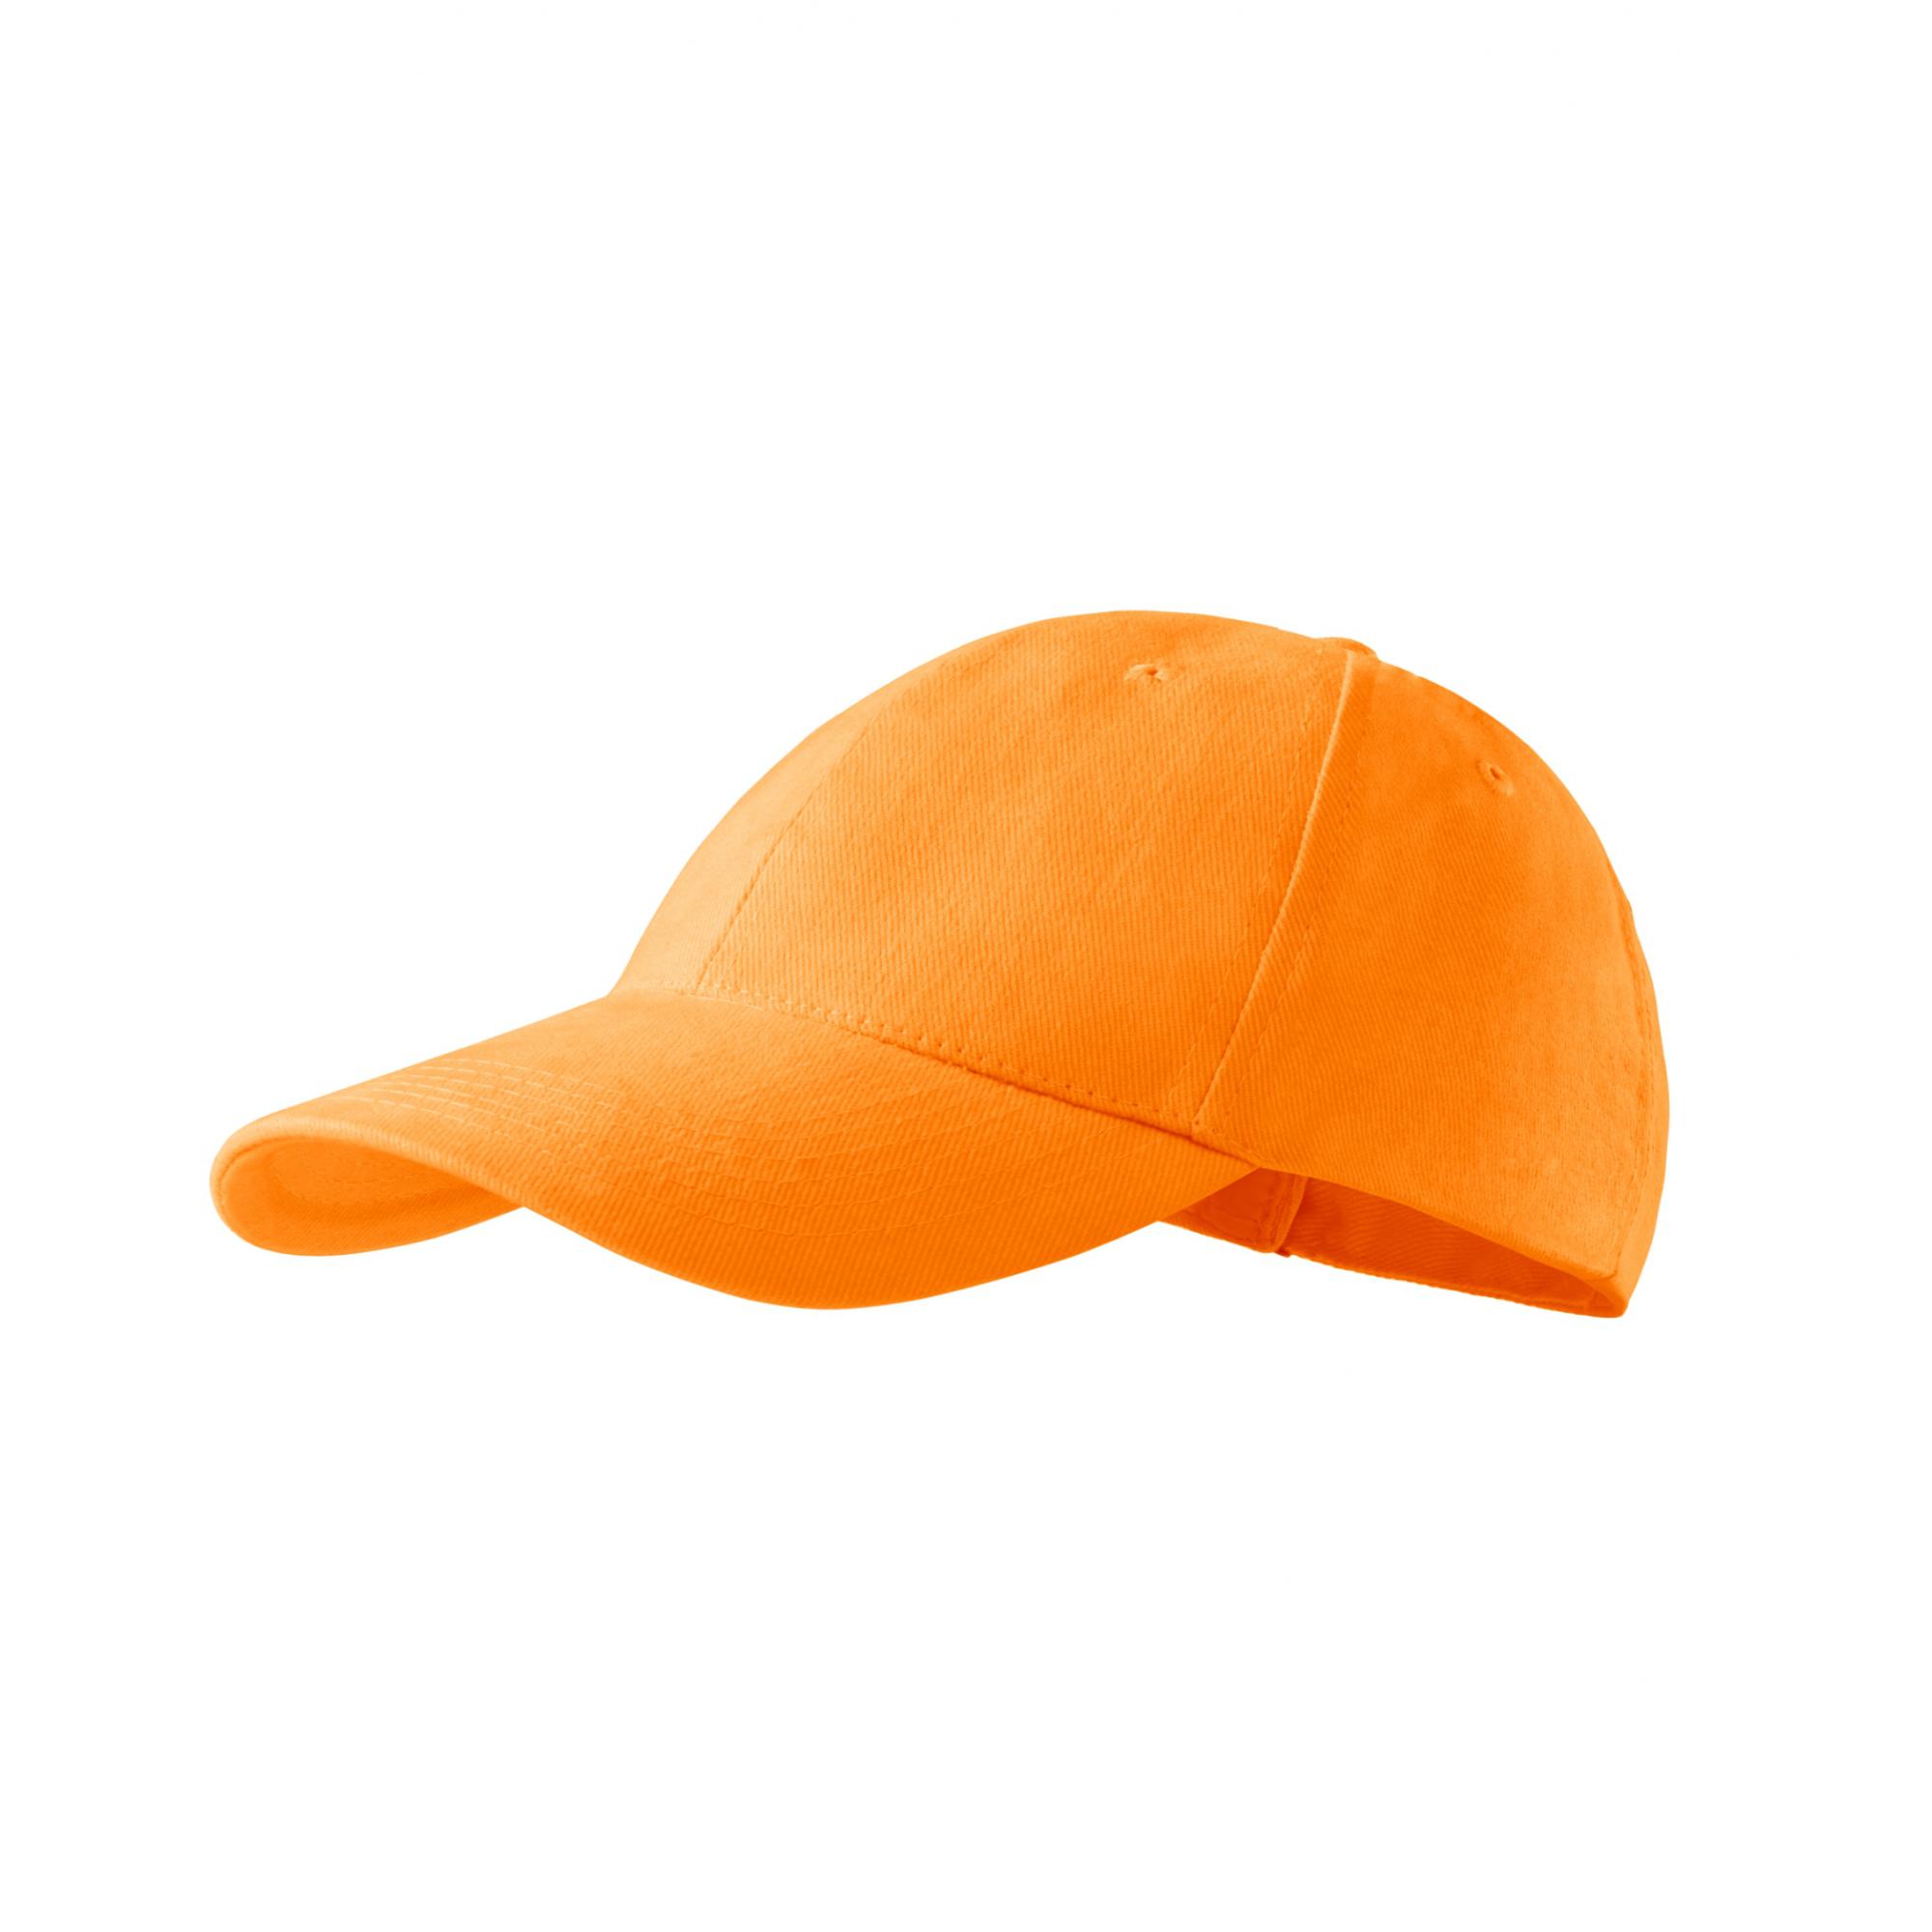 Şapcă unisex 6P 305 Tangerine orange